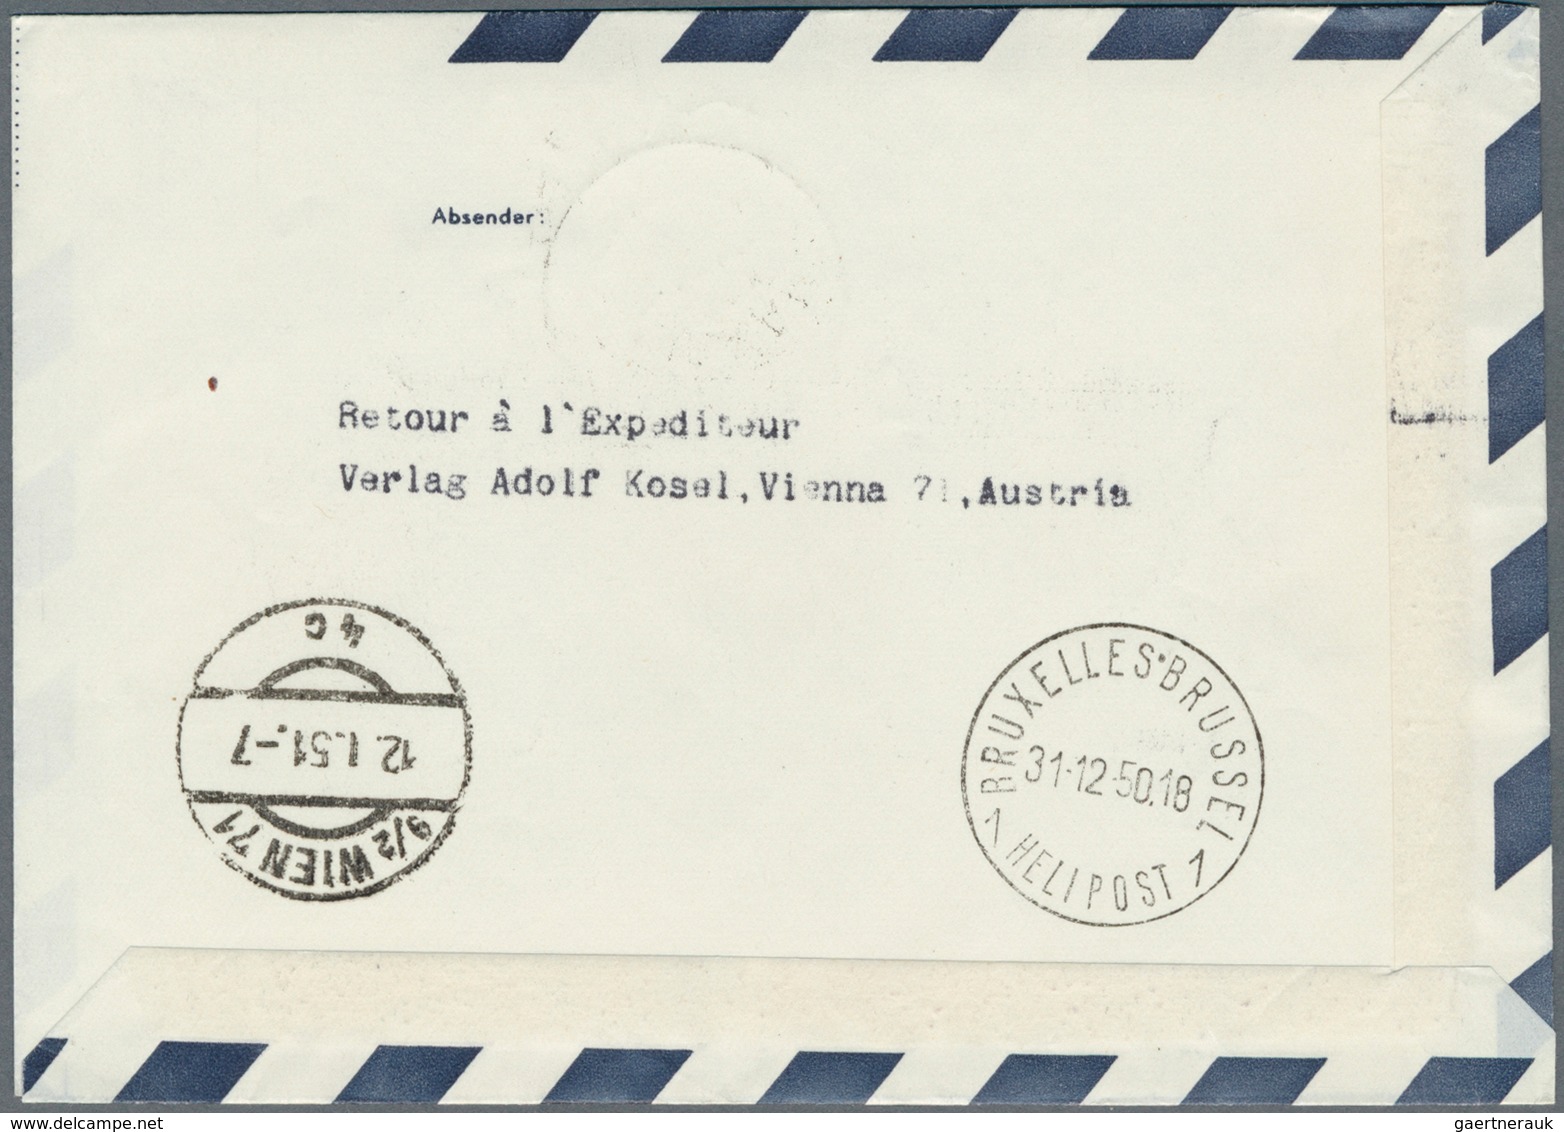 Österreich - Flugpost: 1950, SILVESTER-SONDER-FLUGPOST SALZBURG, 31.12.1950, komplette Serie mit 9 P